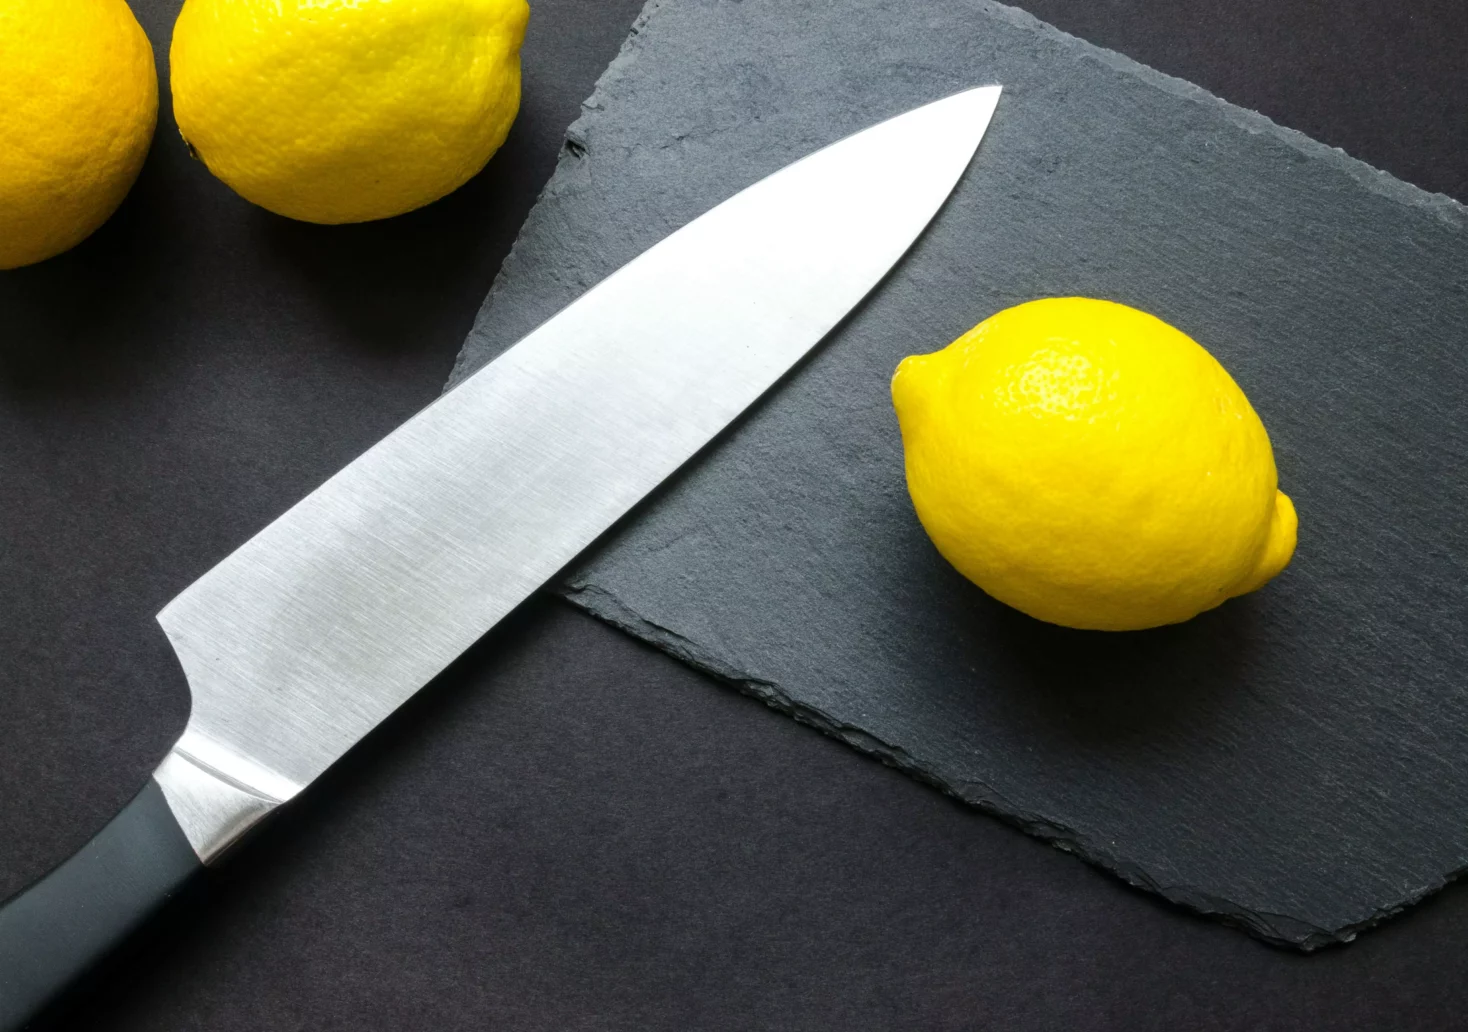 Foto in Beitrag von 5min.at: Zu sehen ist ein Messer und einige Zitronen auf einem Schneidebrett.